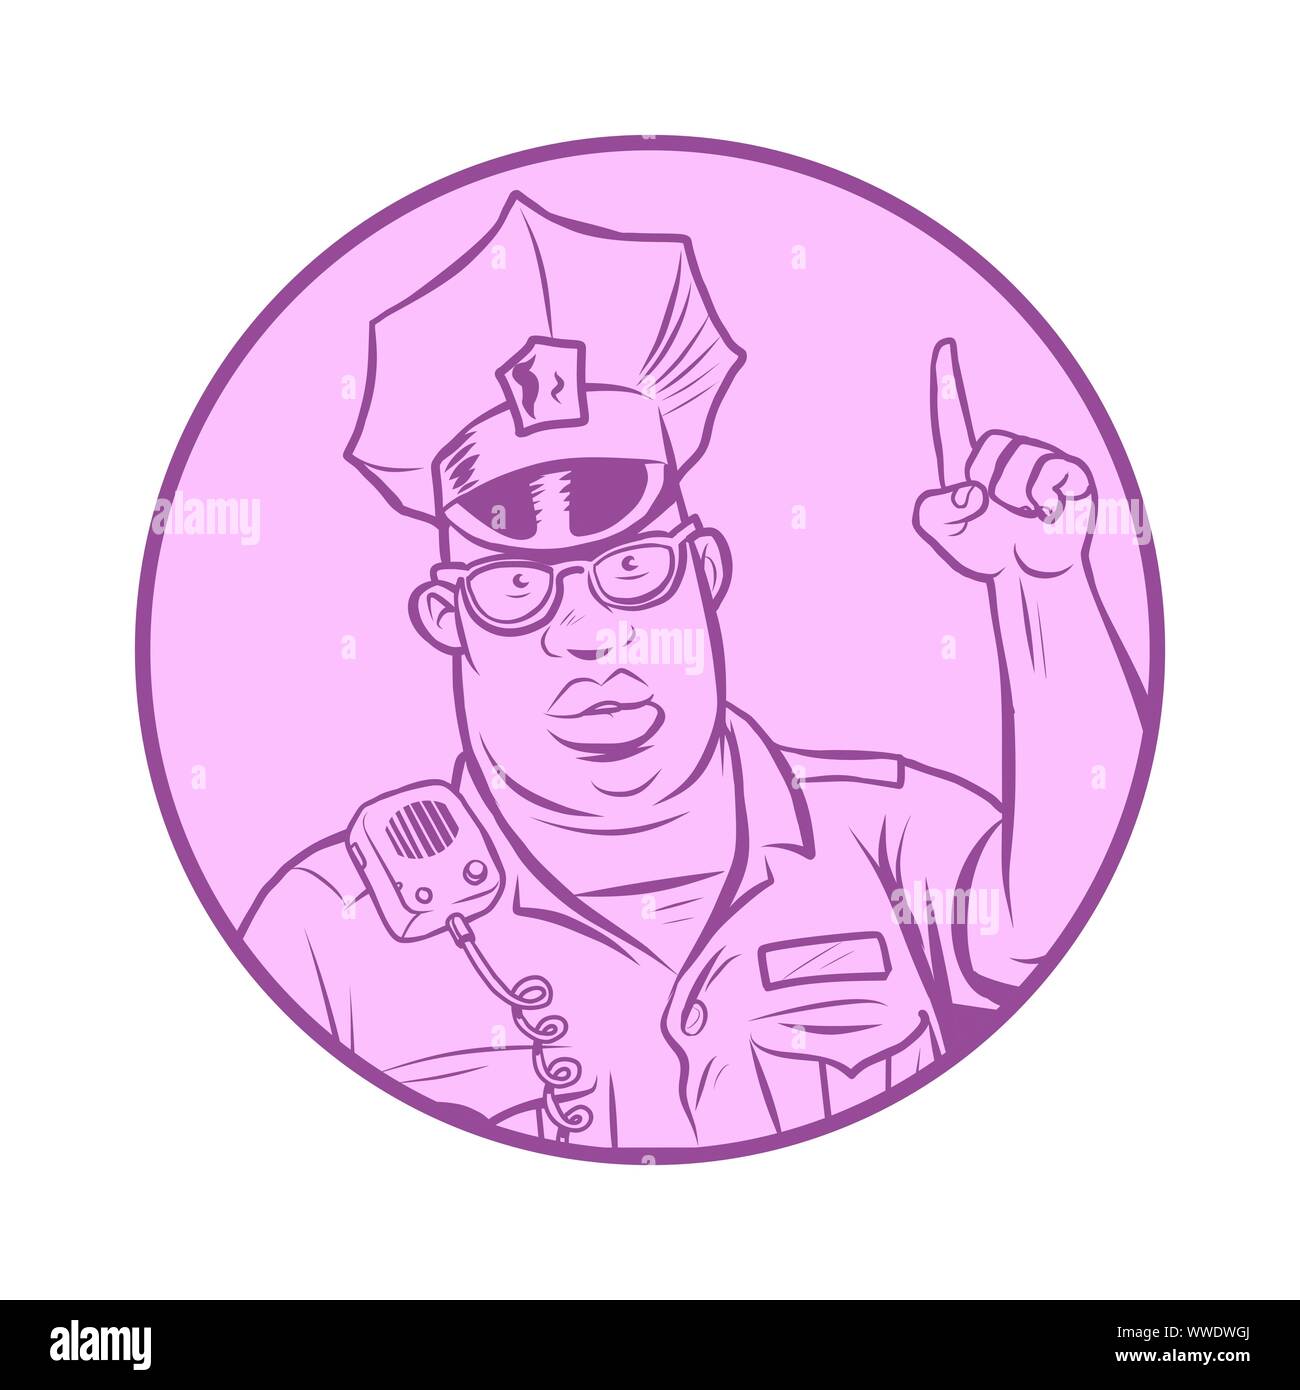 Polizei Index Finger nach oben. Comic cartoon Pop Art retro Vektor Zeichnung Abbildung Stock Vektor